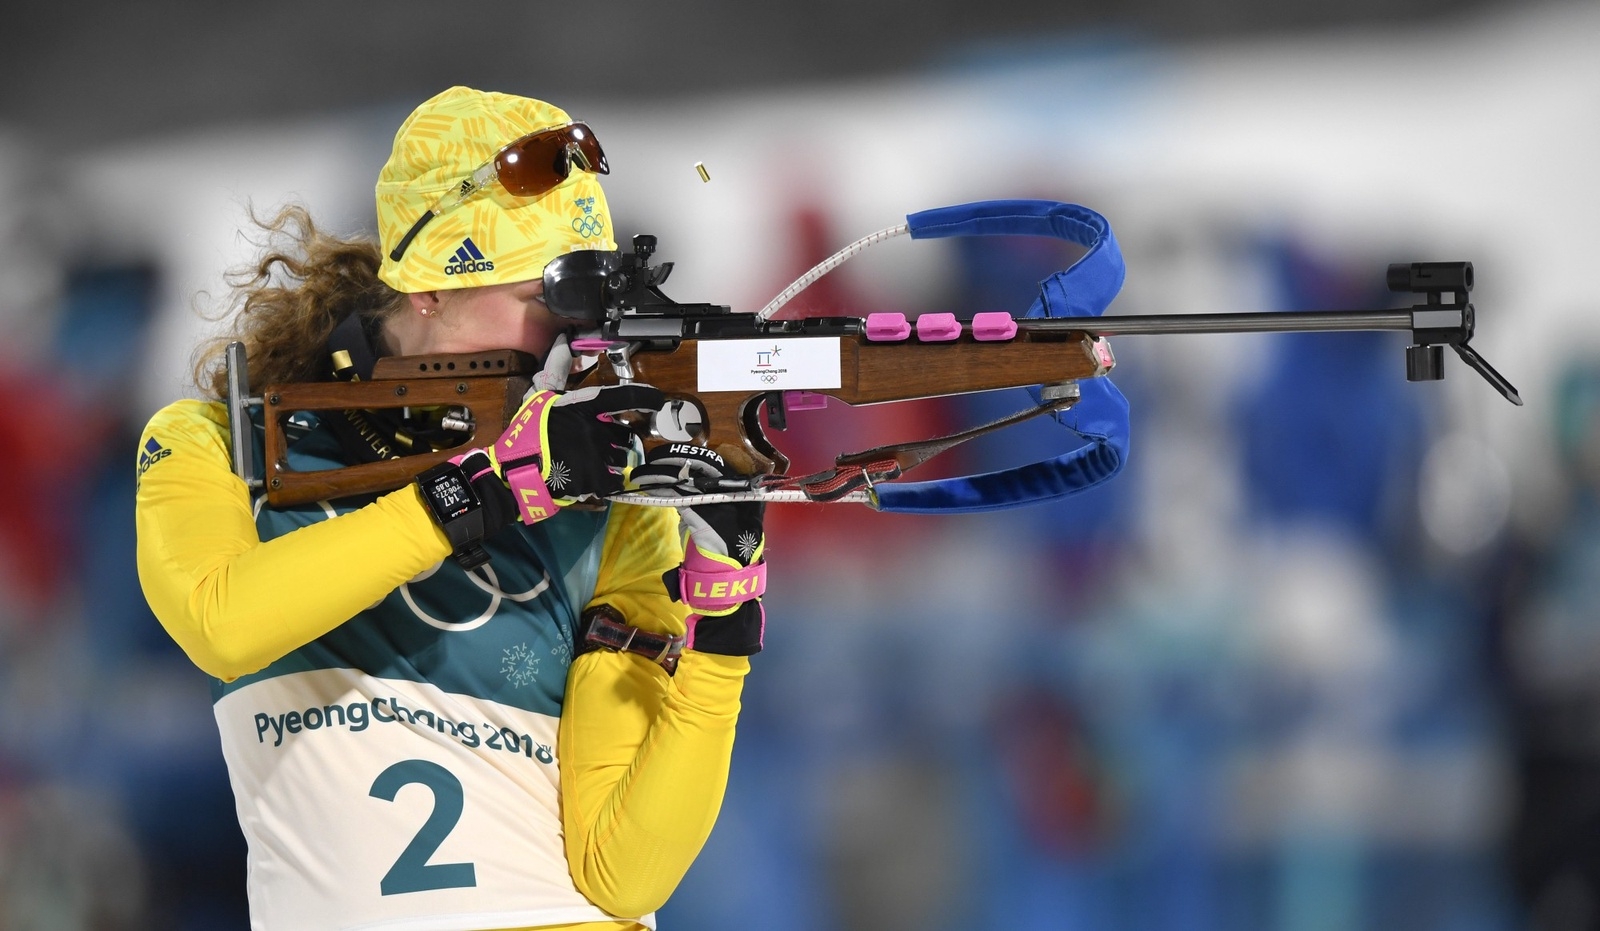 Skidskytten Hanna Öberg tog en sensationell sjundeplats i sin OS-debut.
Foto: TT